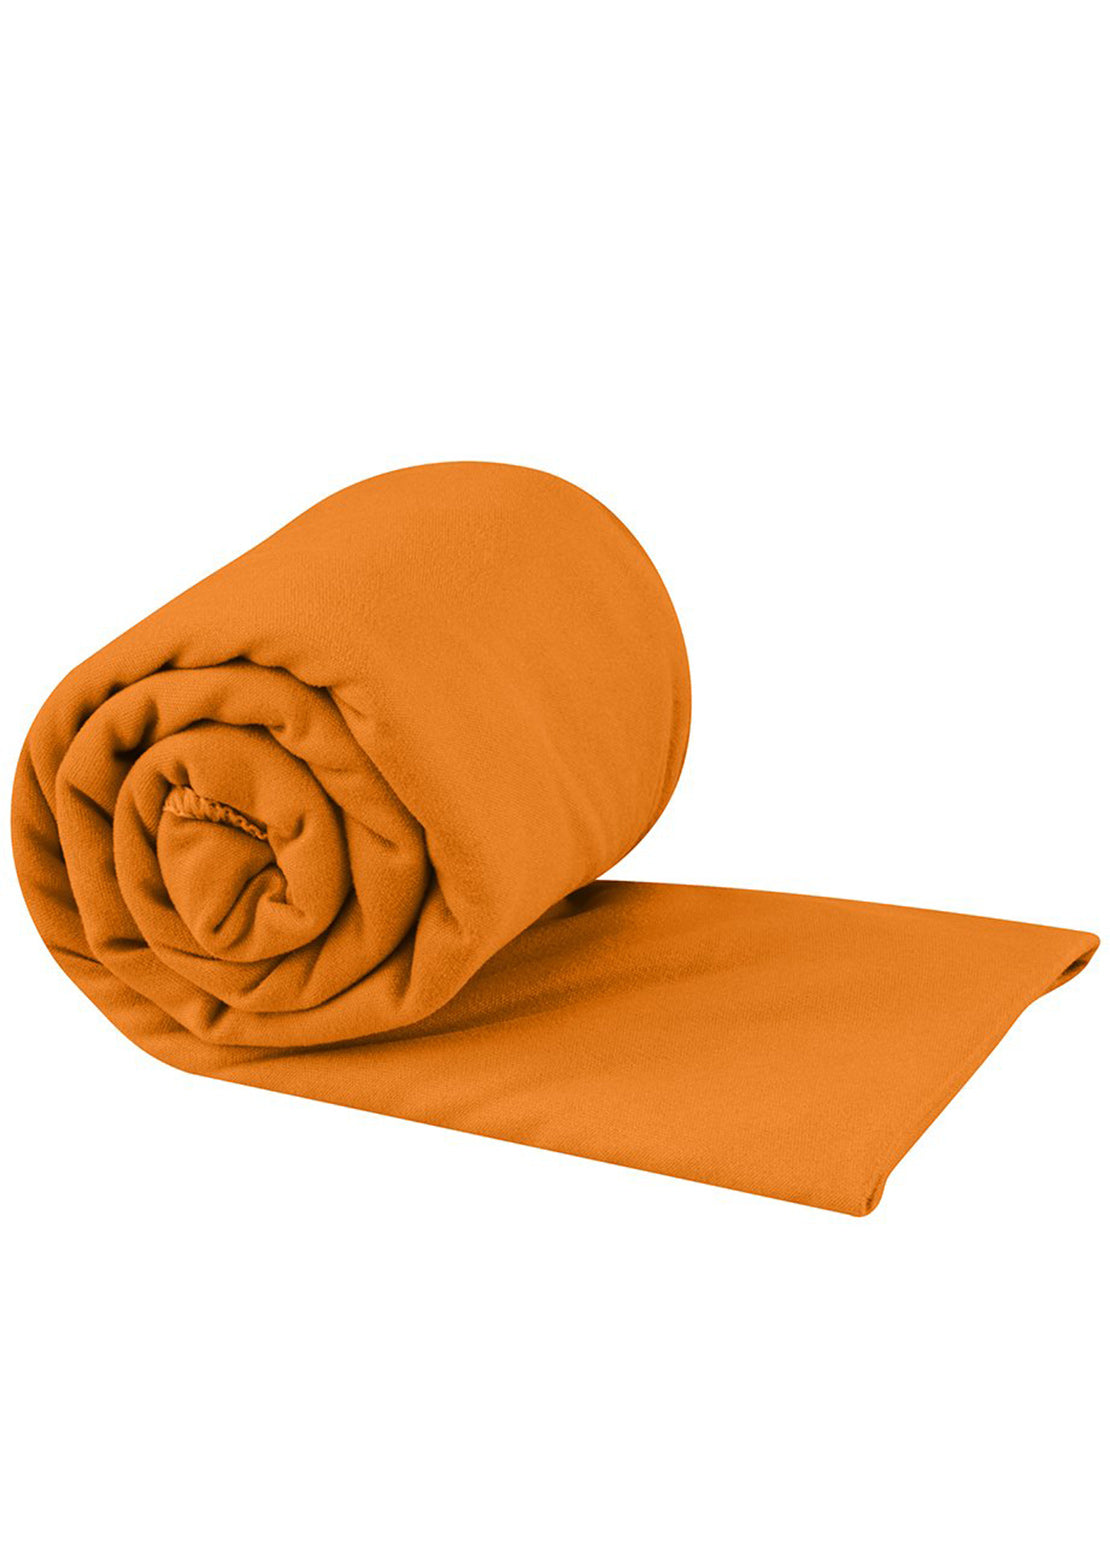 Sea To Summit Pocket Towel - Medium Orange